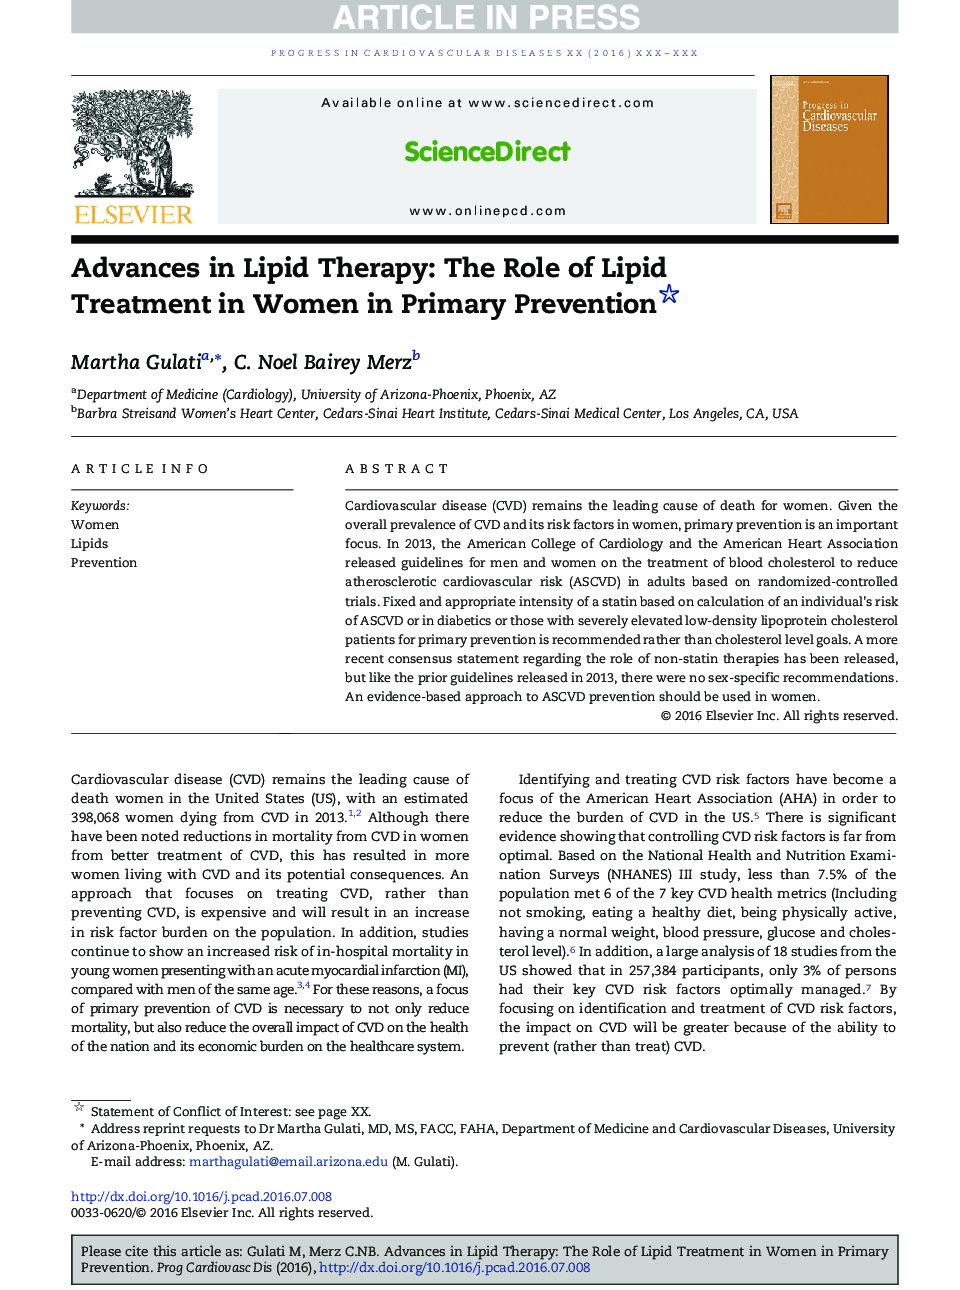 پیشرفت در درمان لیپید: نقش لیپید در پیشگیری از ابتلا به زنان 